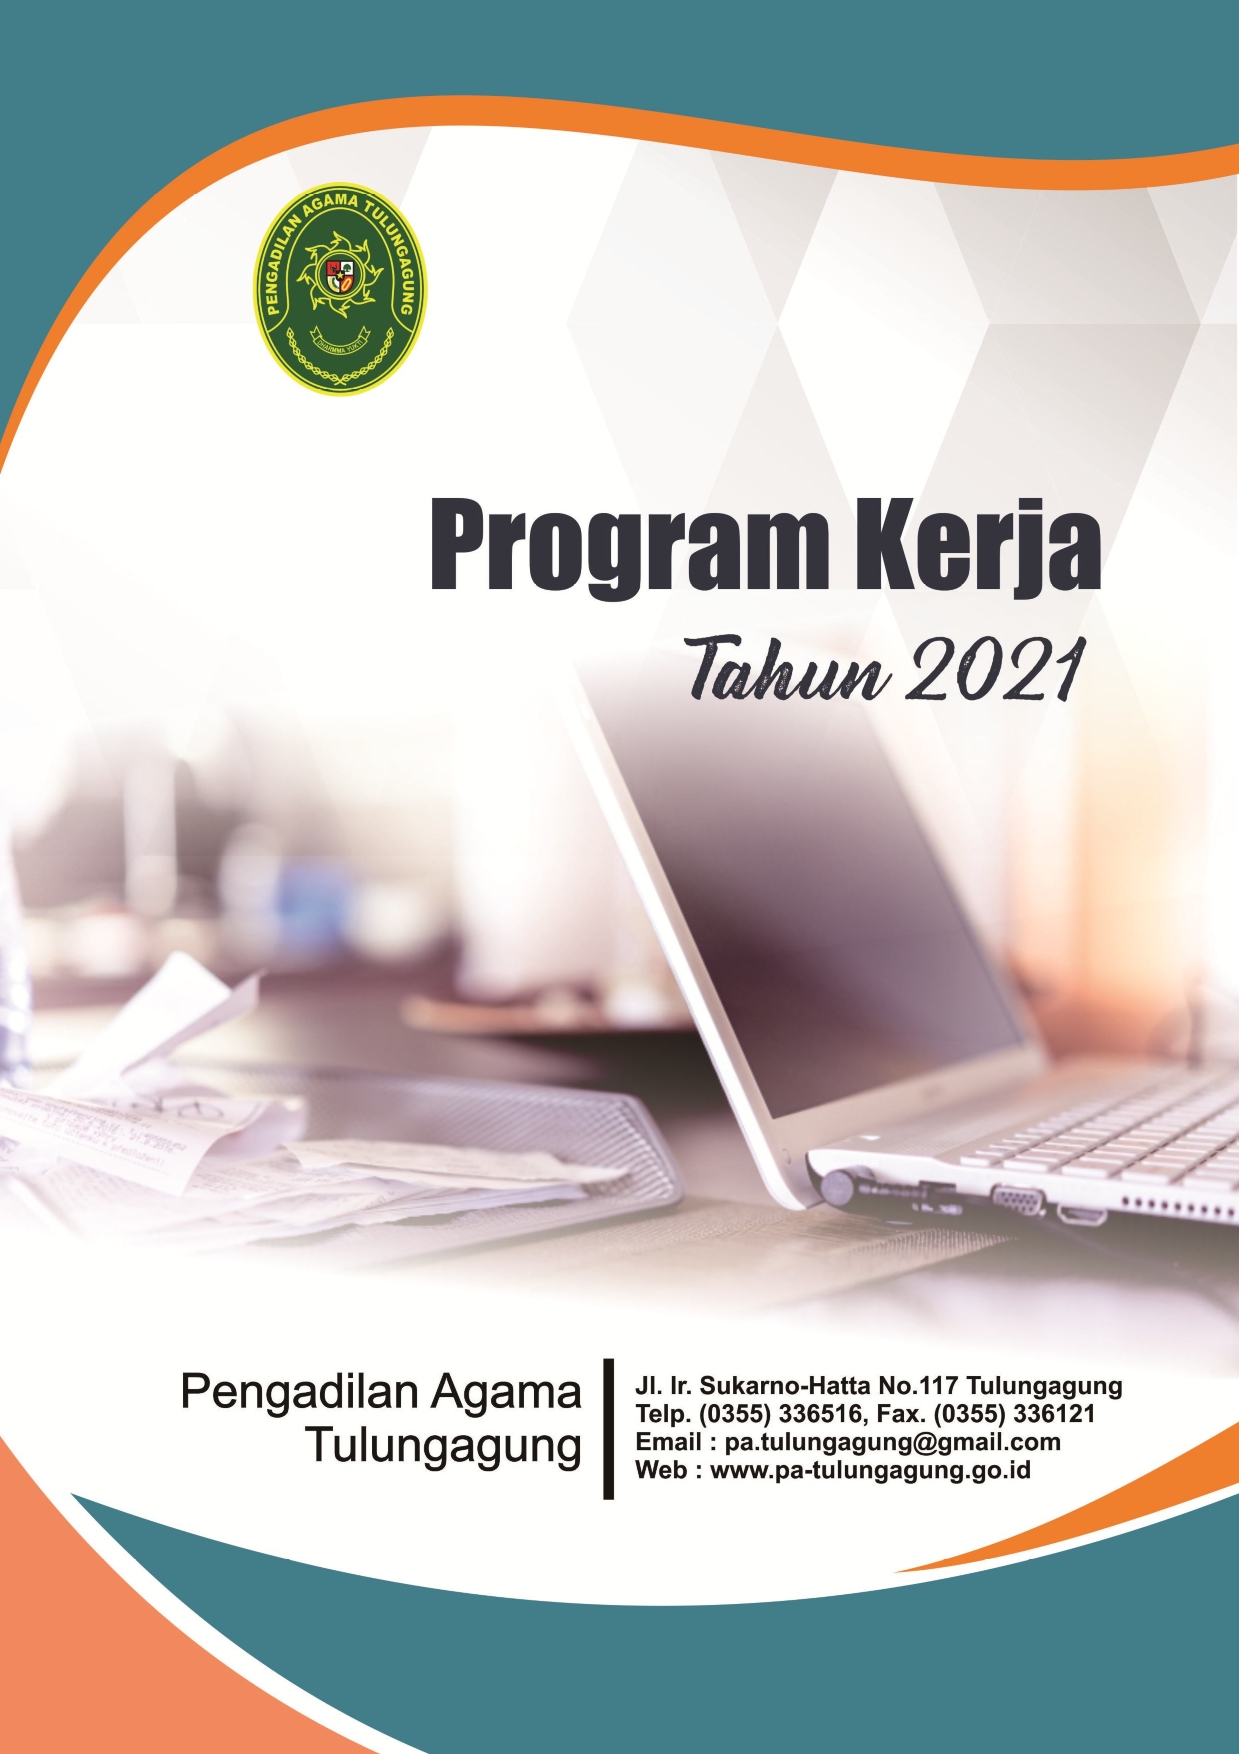 Program Kerja PA Tulungagung 2021 001